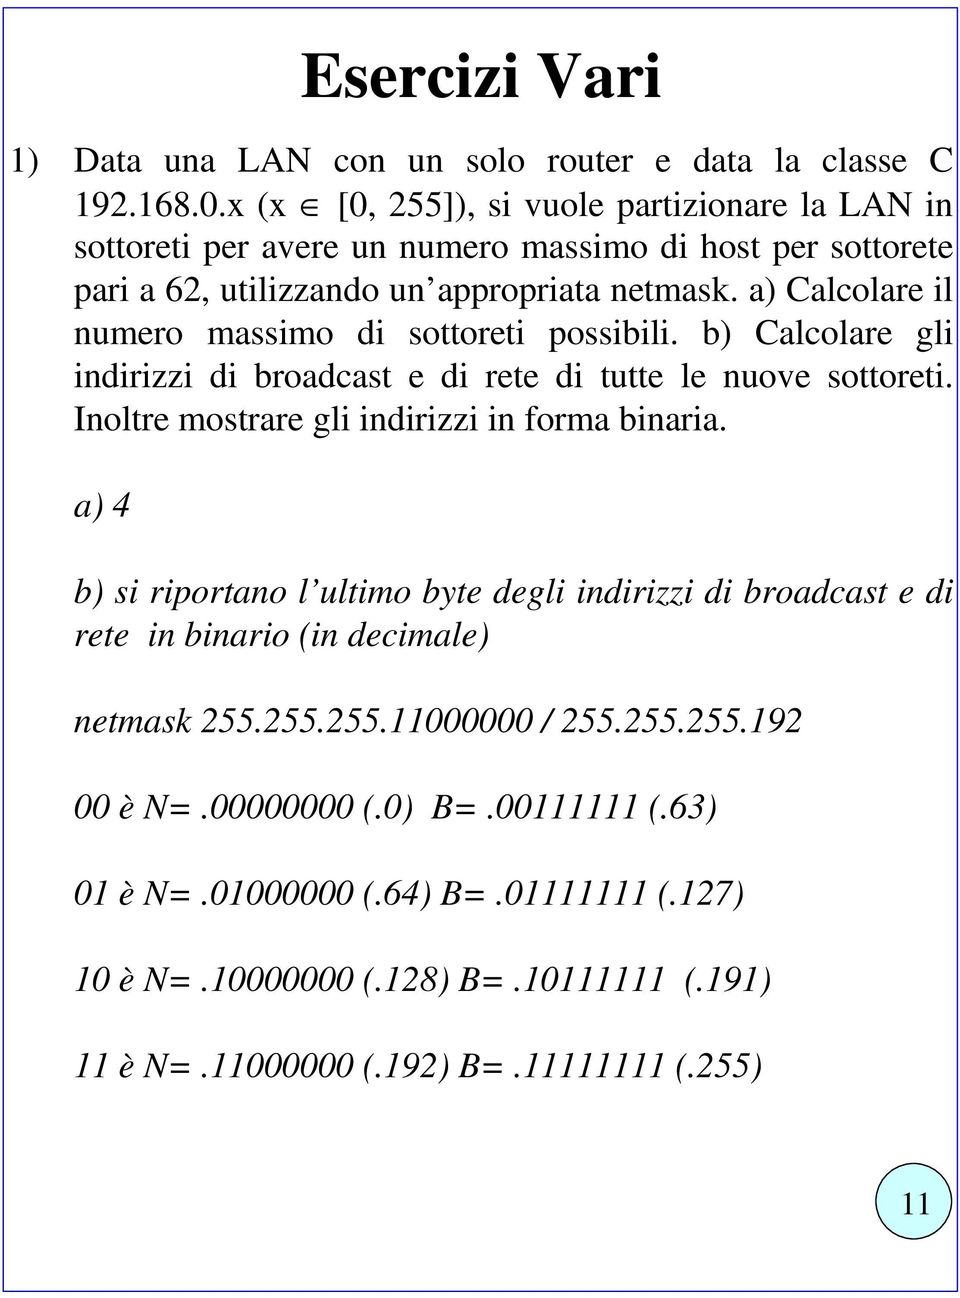 a) Calcolare il numero massimo di sottoreti possibili. b) Calcolare gli indirizzi di broadcast e di rete di tutte le nuove sottoreti. Inoltre mostrare gli indirizzi in forma binaria.